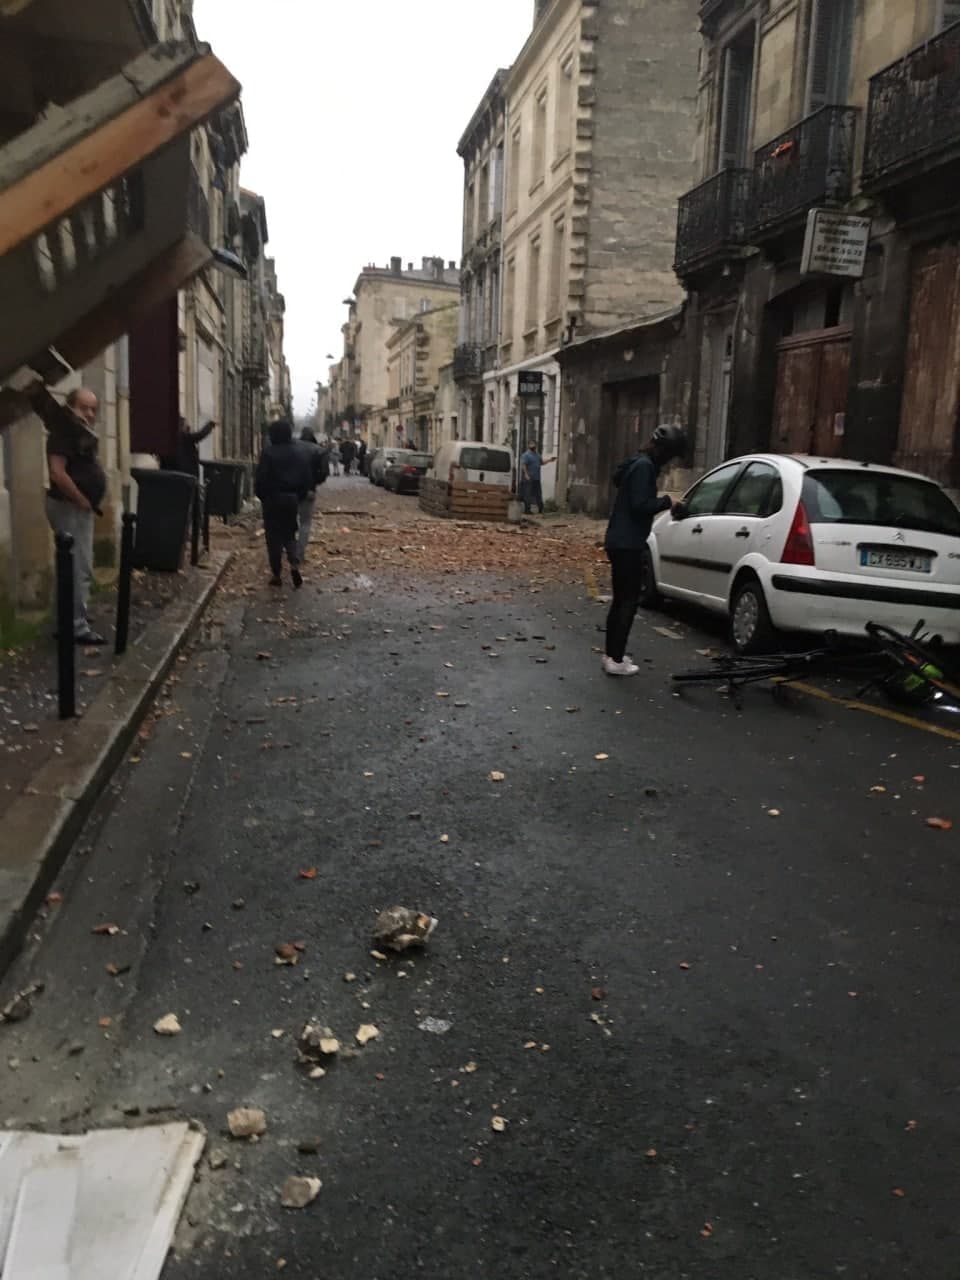 Во Франции произошел взрыв, пострадали пять человек. Фото: bfmtv.com